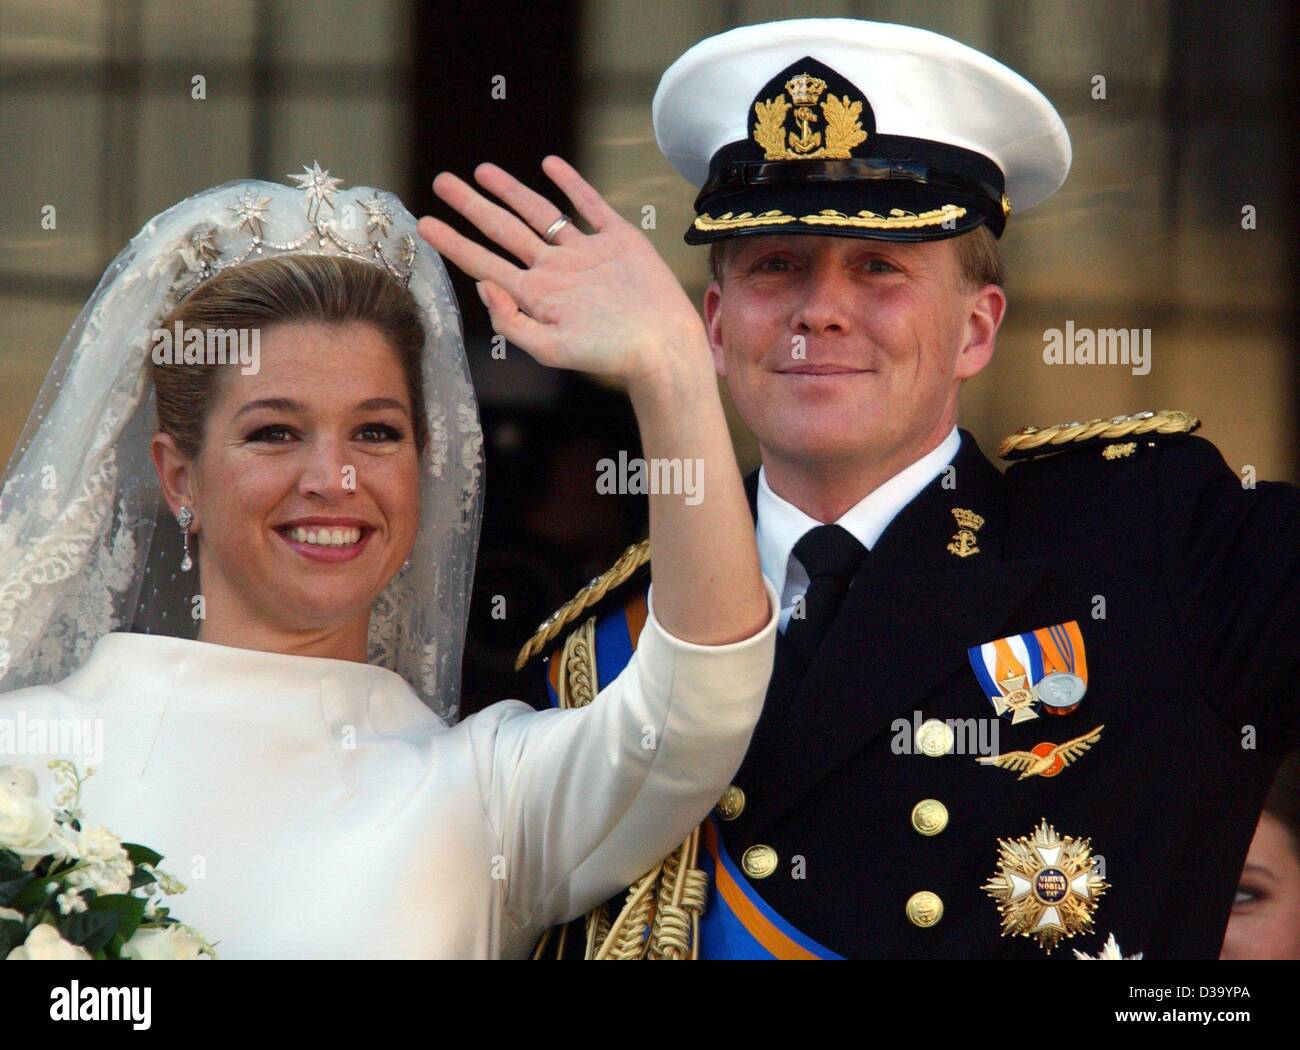 (Dpa) - königliche Hochzeit in Amsterdam: niederländischen Kronprinzen Willem-Alexander und seine Frau Prinzessin Maxima Zorreguieta Welle der Menge vom Balkon des königlichen Palastes in Amsterdam nach ihrer Trauung in der Kirche, 2. Februar 2002. Stockfoto